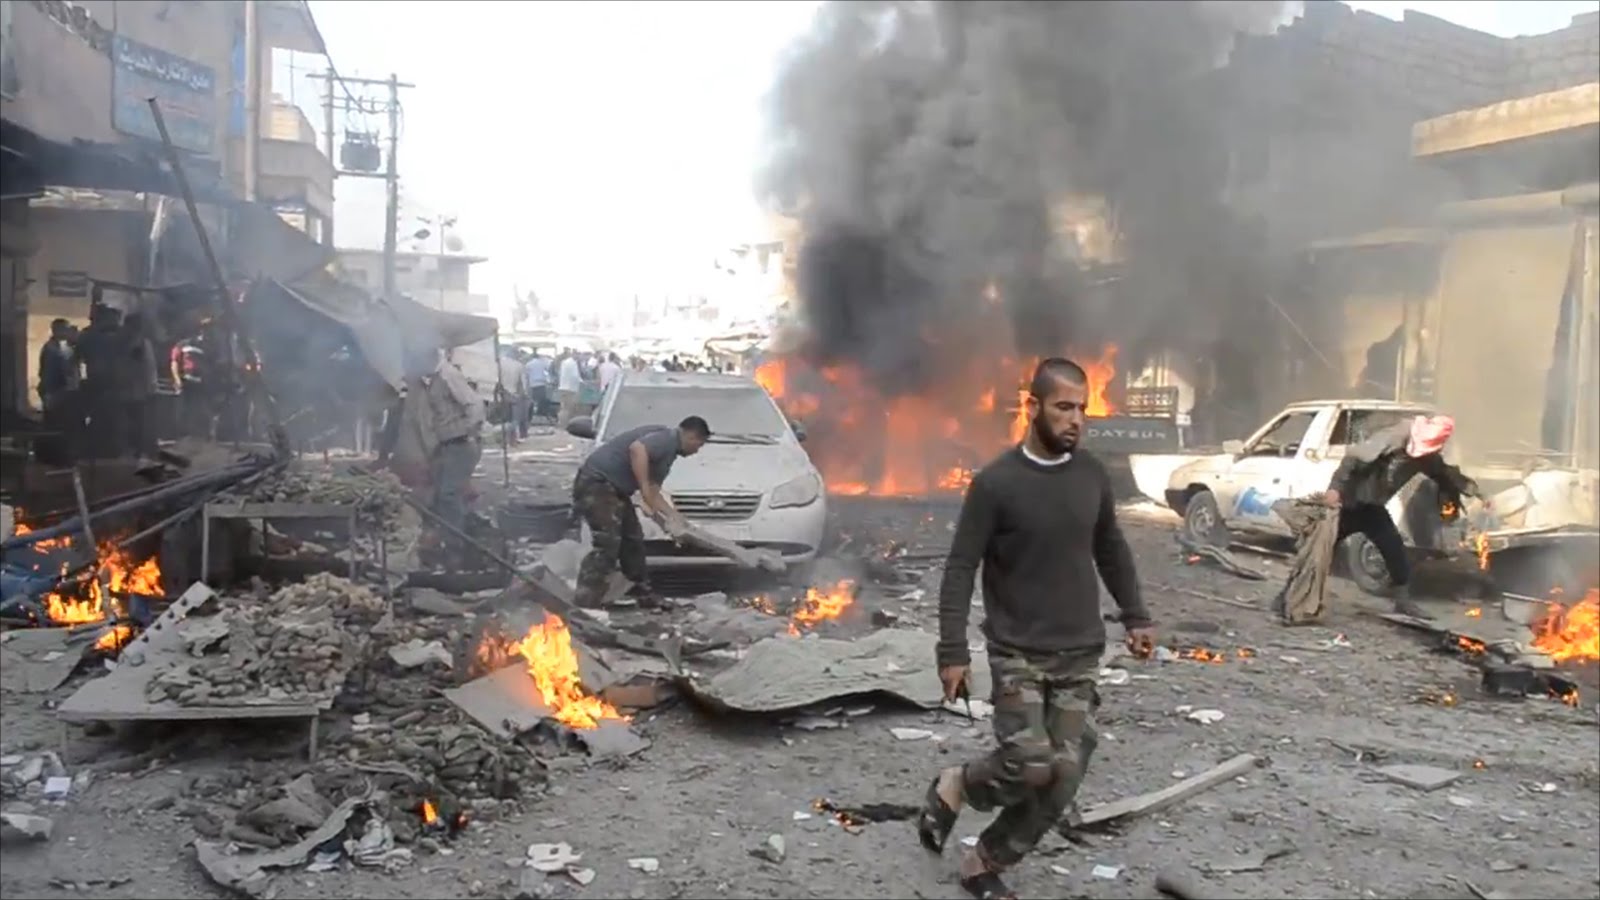   مقتل وإصابة 27 مدنيا في قصف للتحالف الدولي على مدينة الرقة السورية